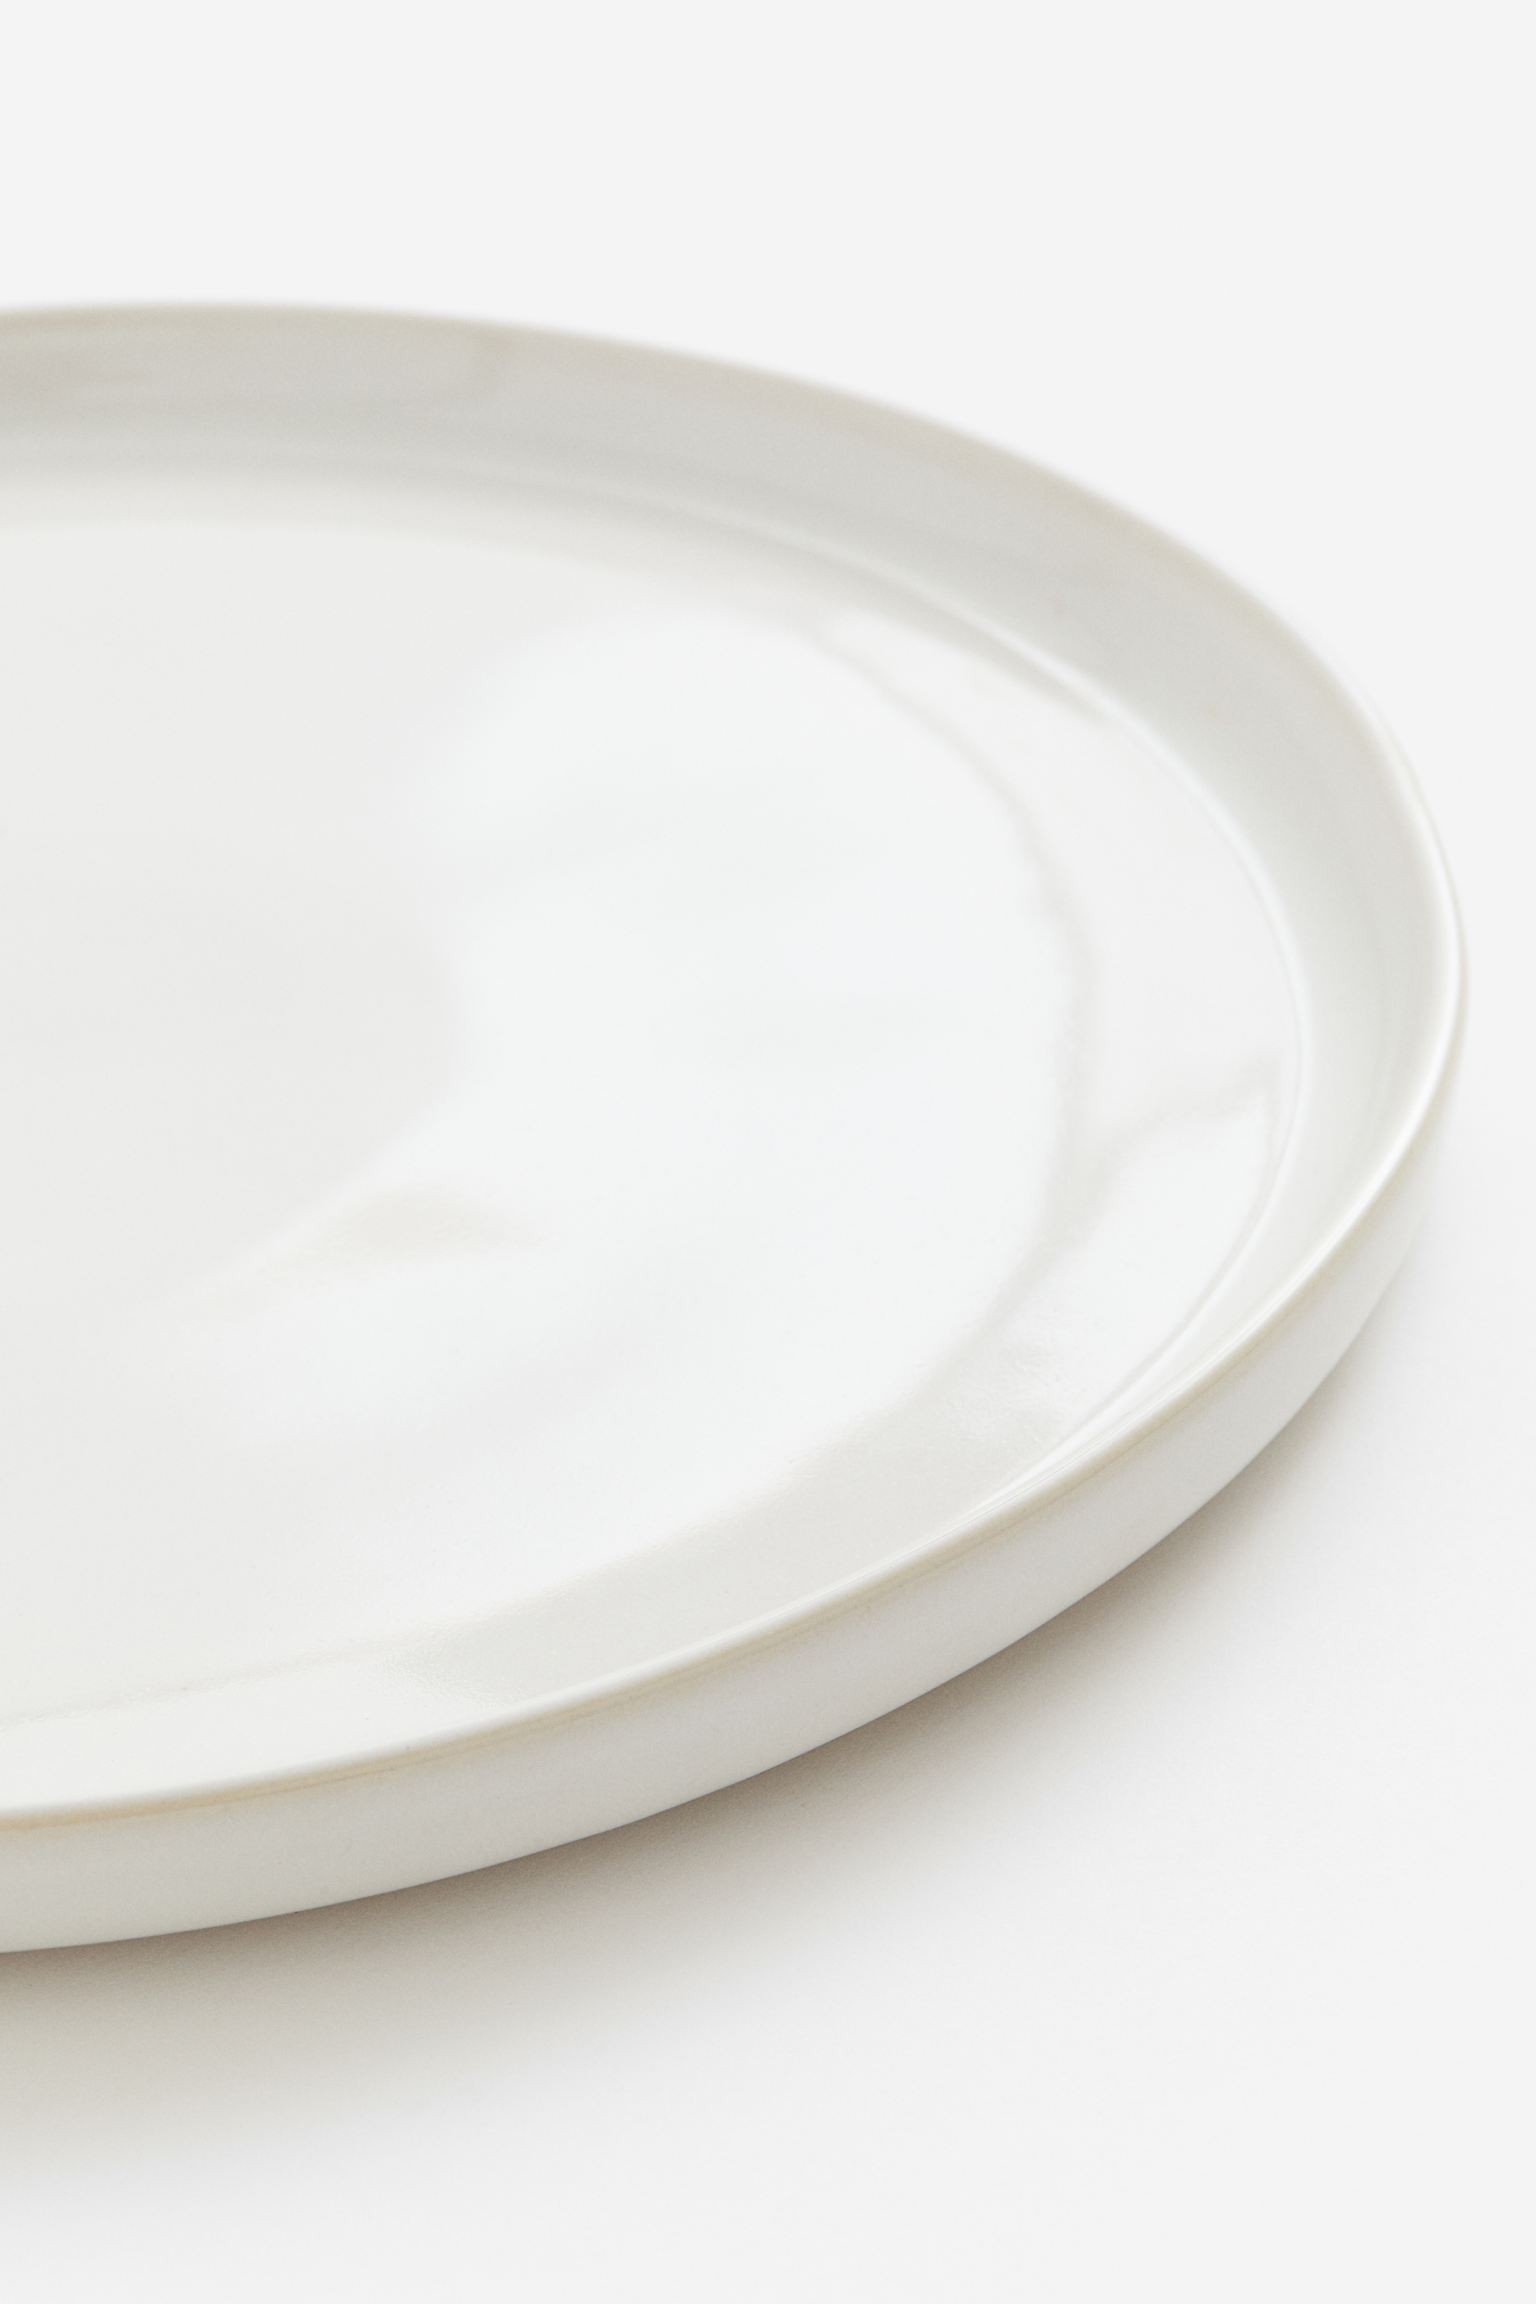 H&M Home Большая керамическая тарелка, Натуральный белый/глянцевый 0644385008 | 0644385008